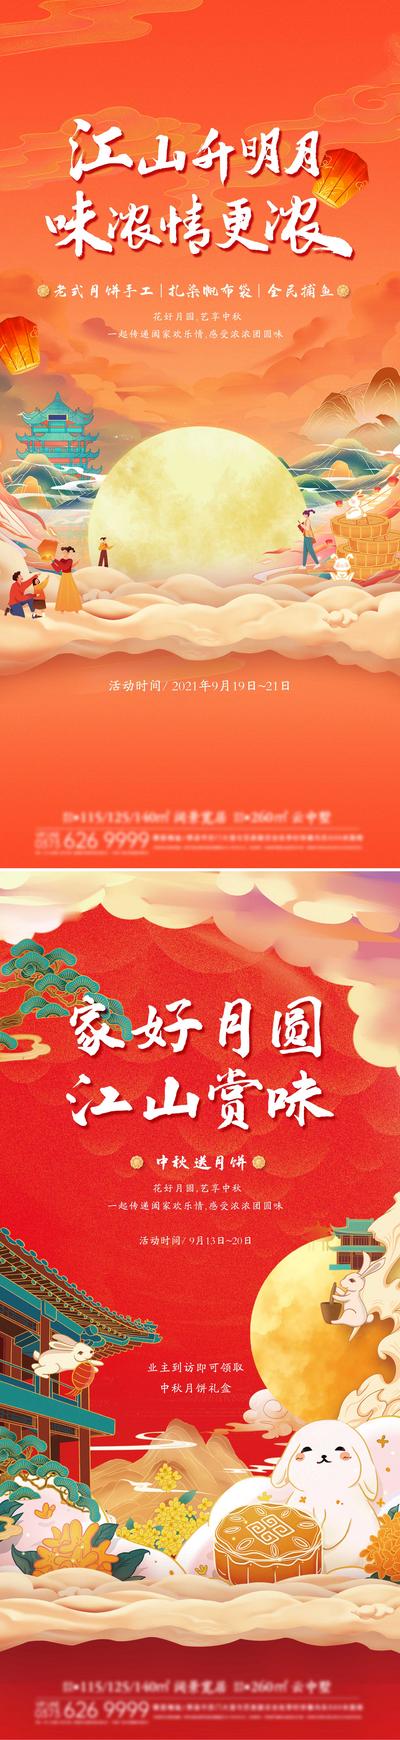 南门网 海报 房地产 中国传统节日 中秋节 插画 月亮 活动